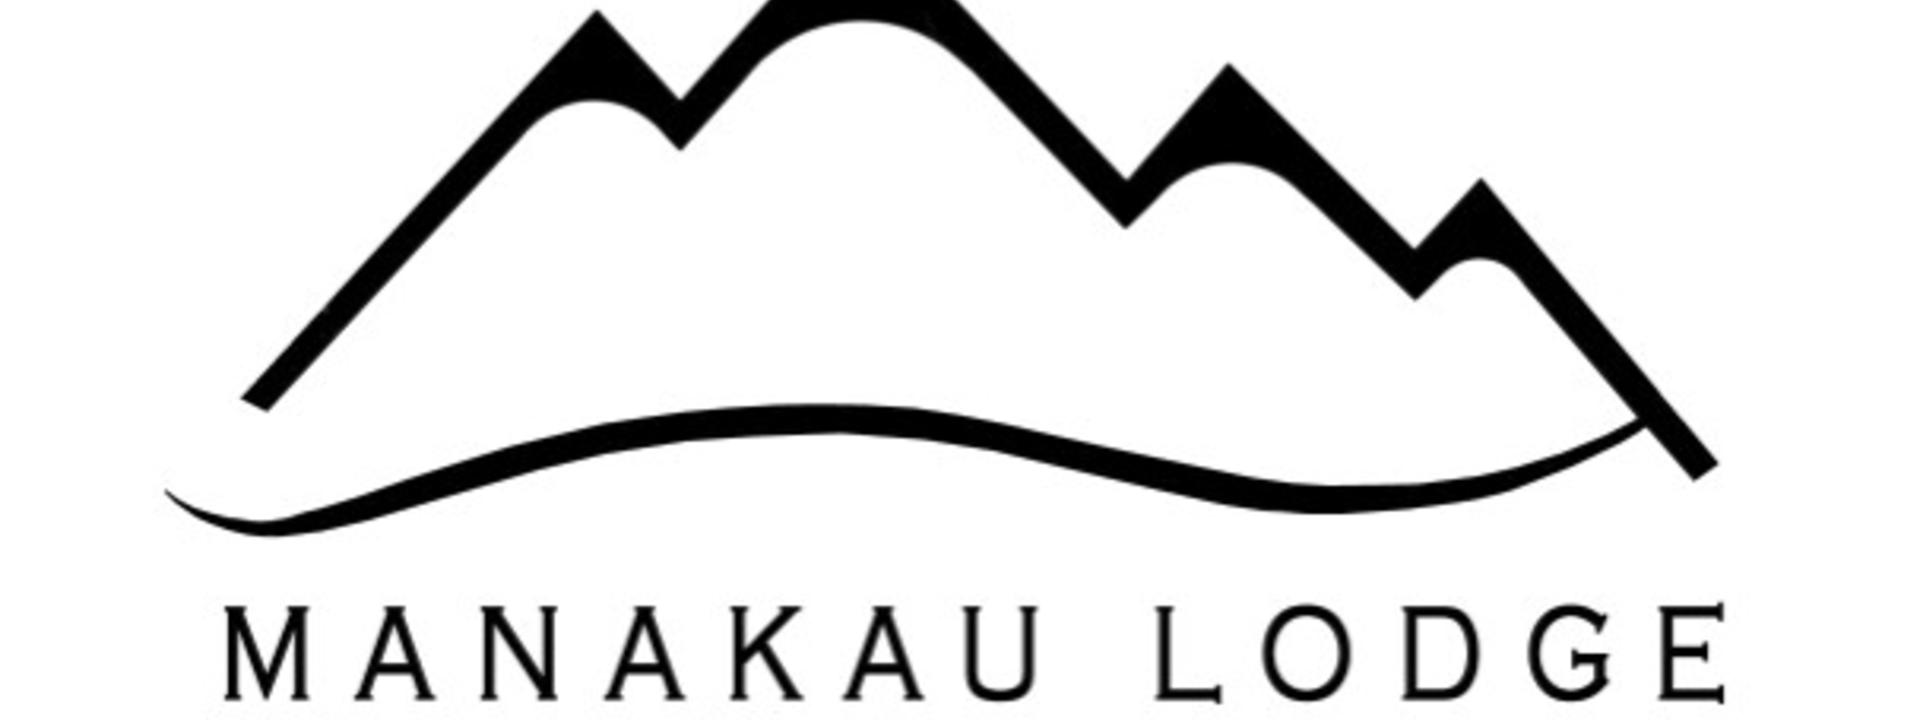 Manakau Lodge logo - Version 2 jpeg.jpg